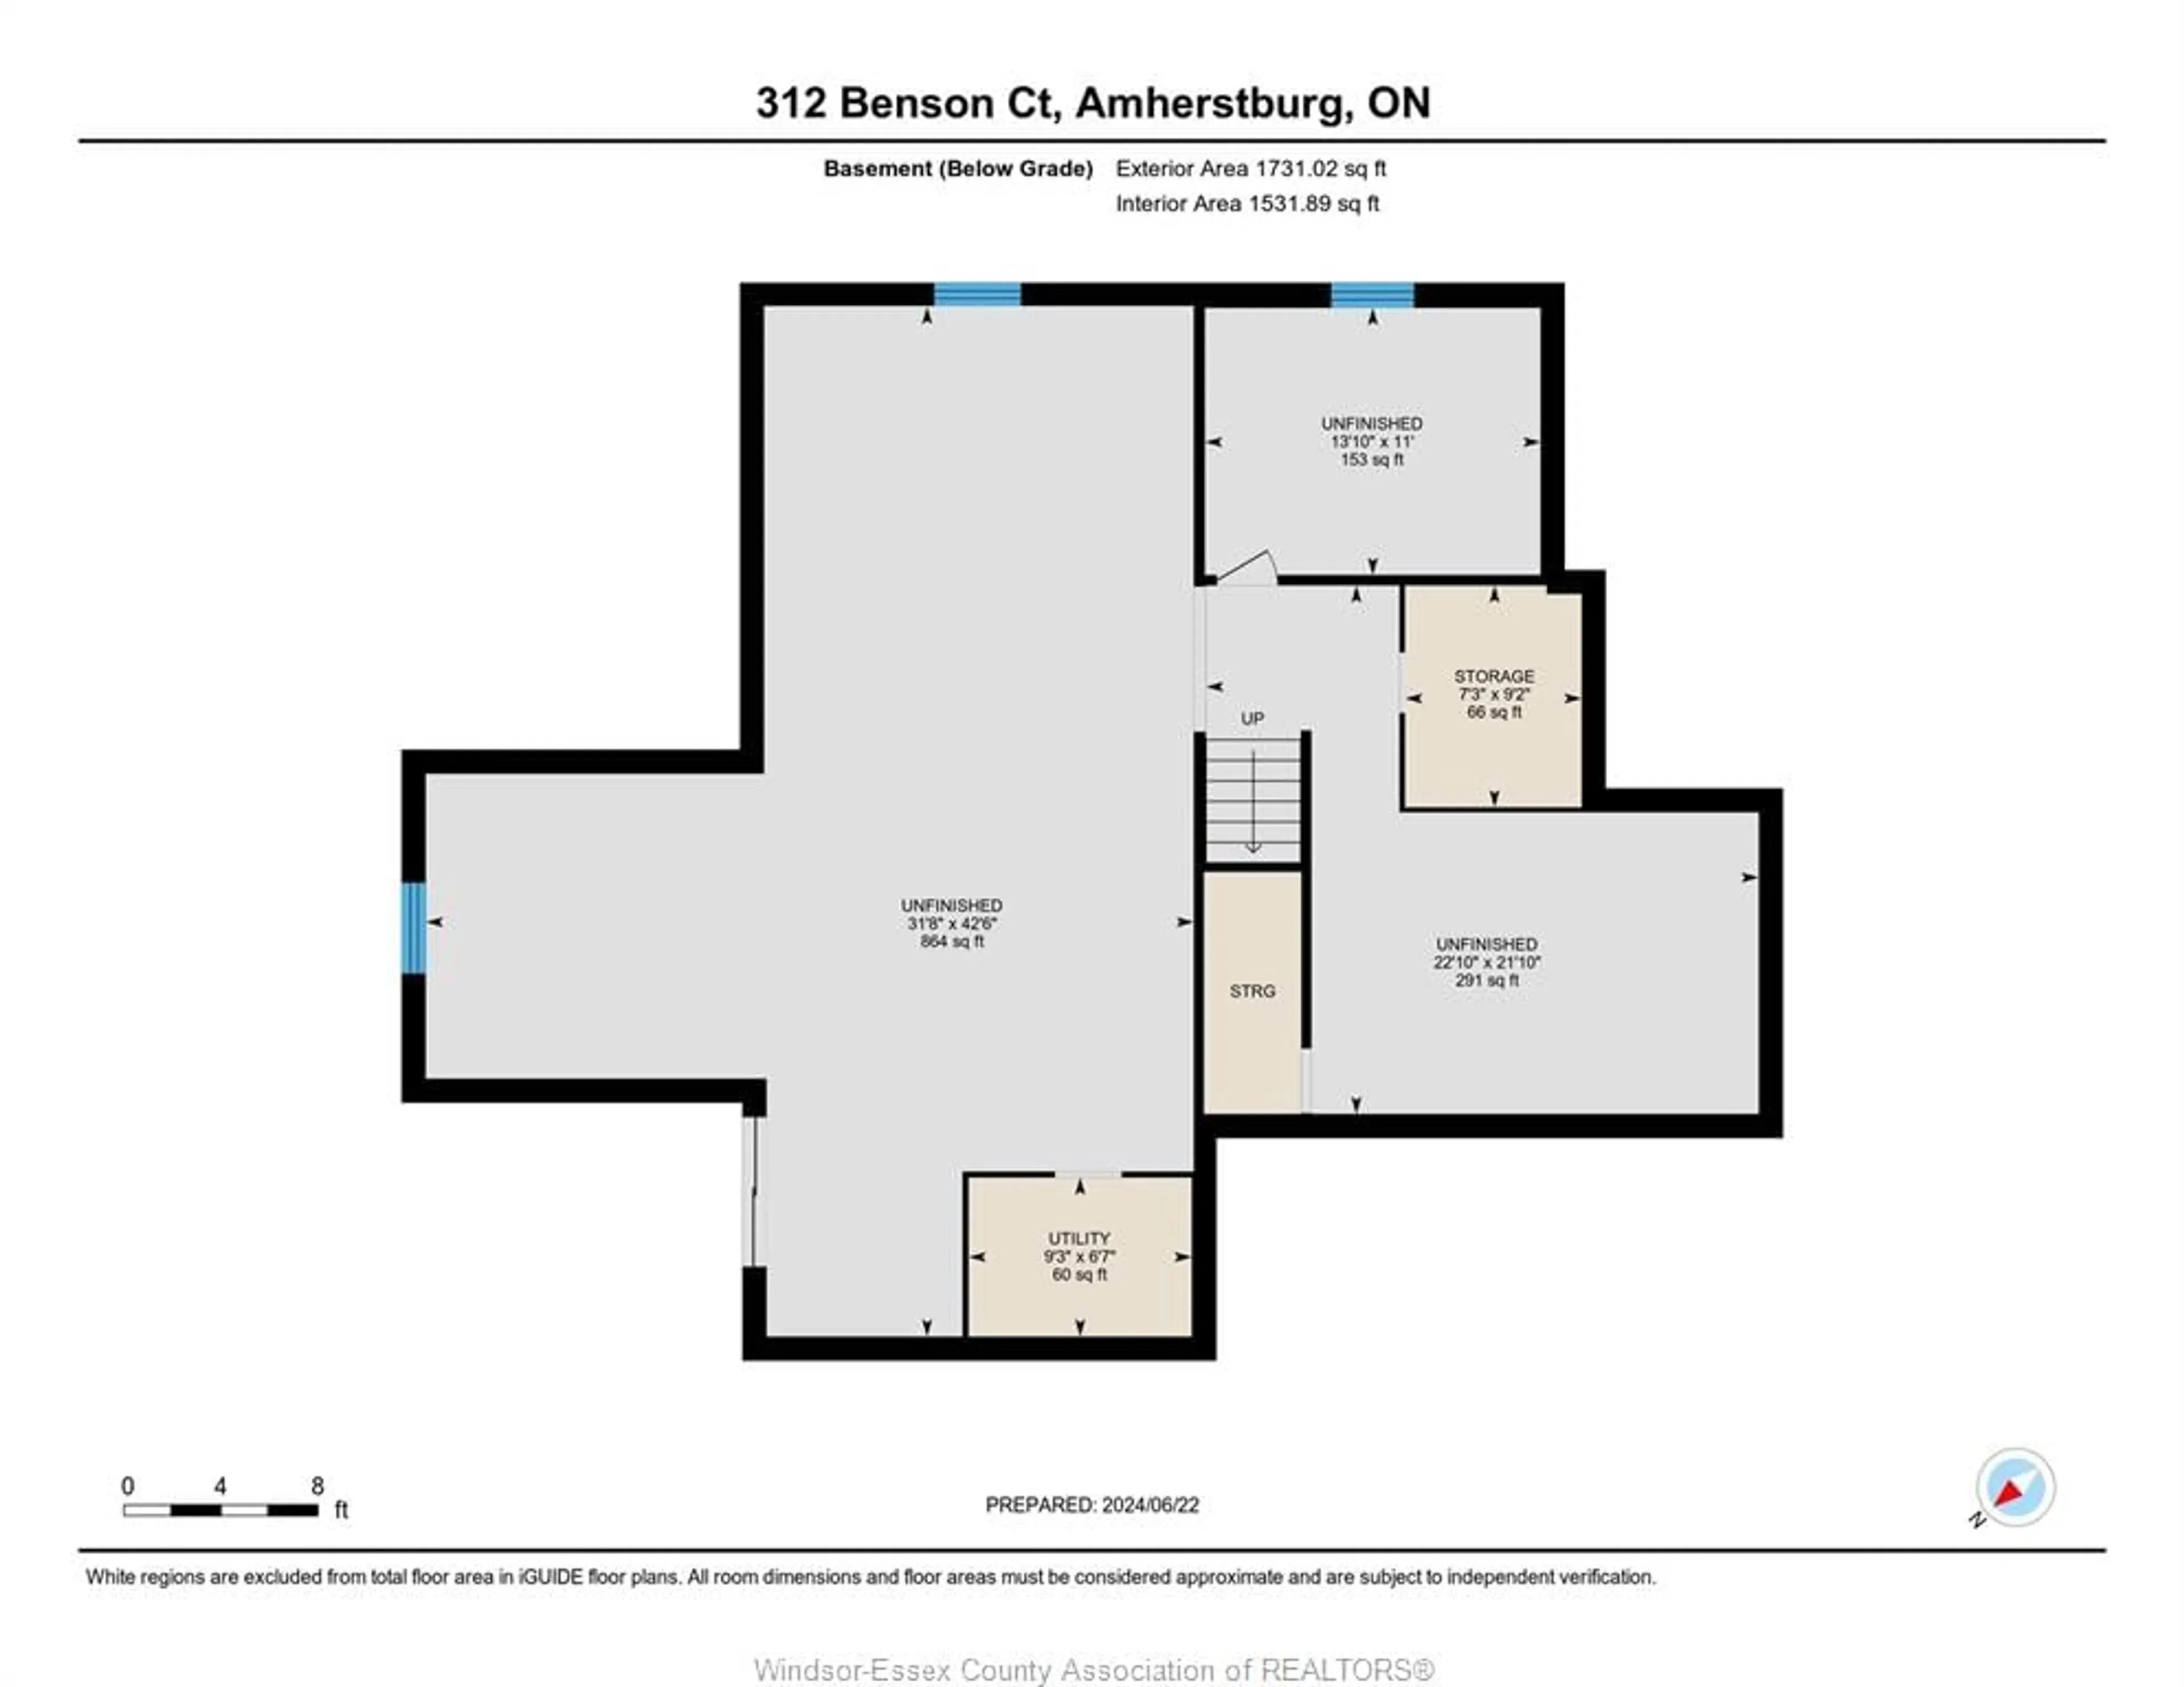 Floor plan for 312 BENSON Crt, Amherstburg Ontario N9V 0G7